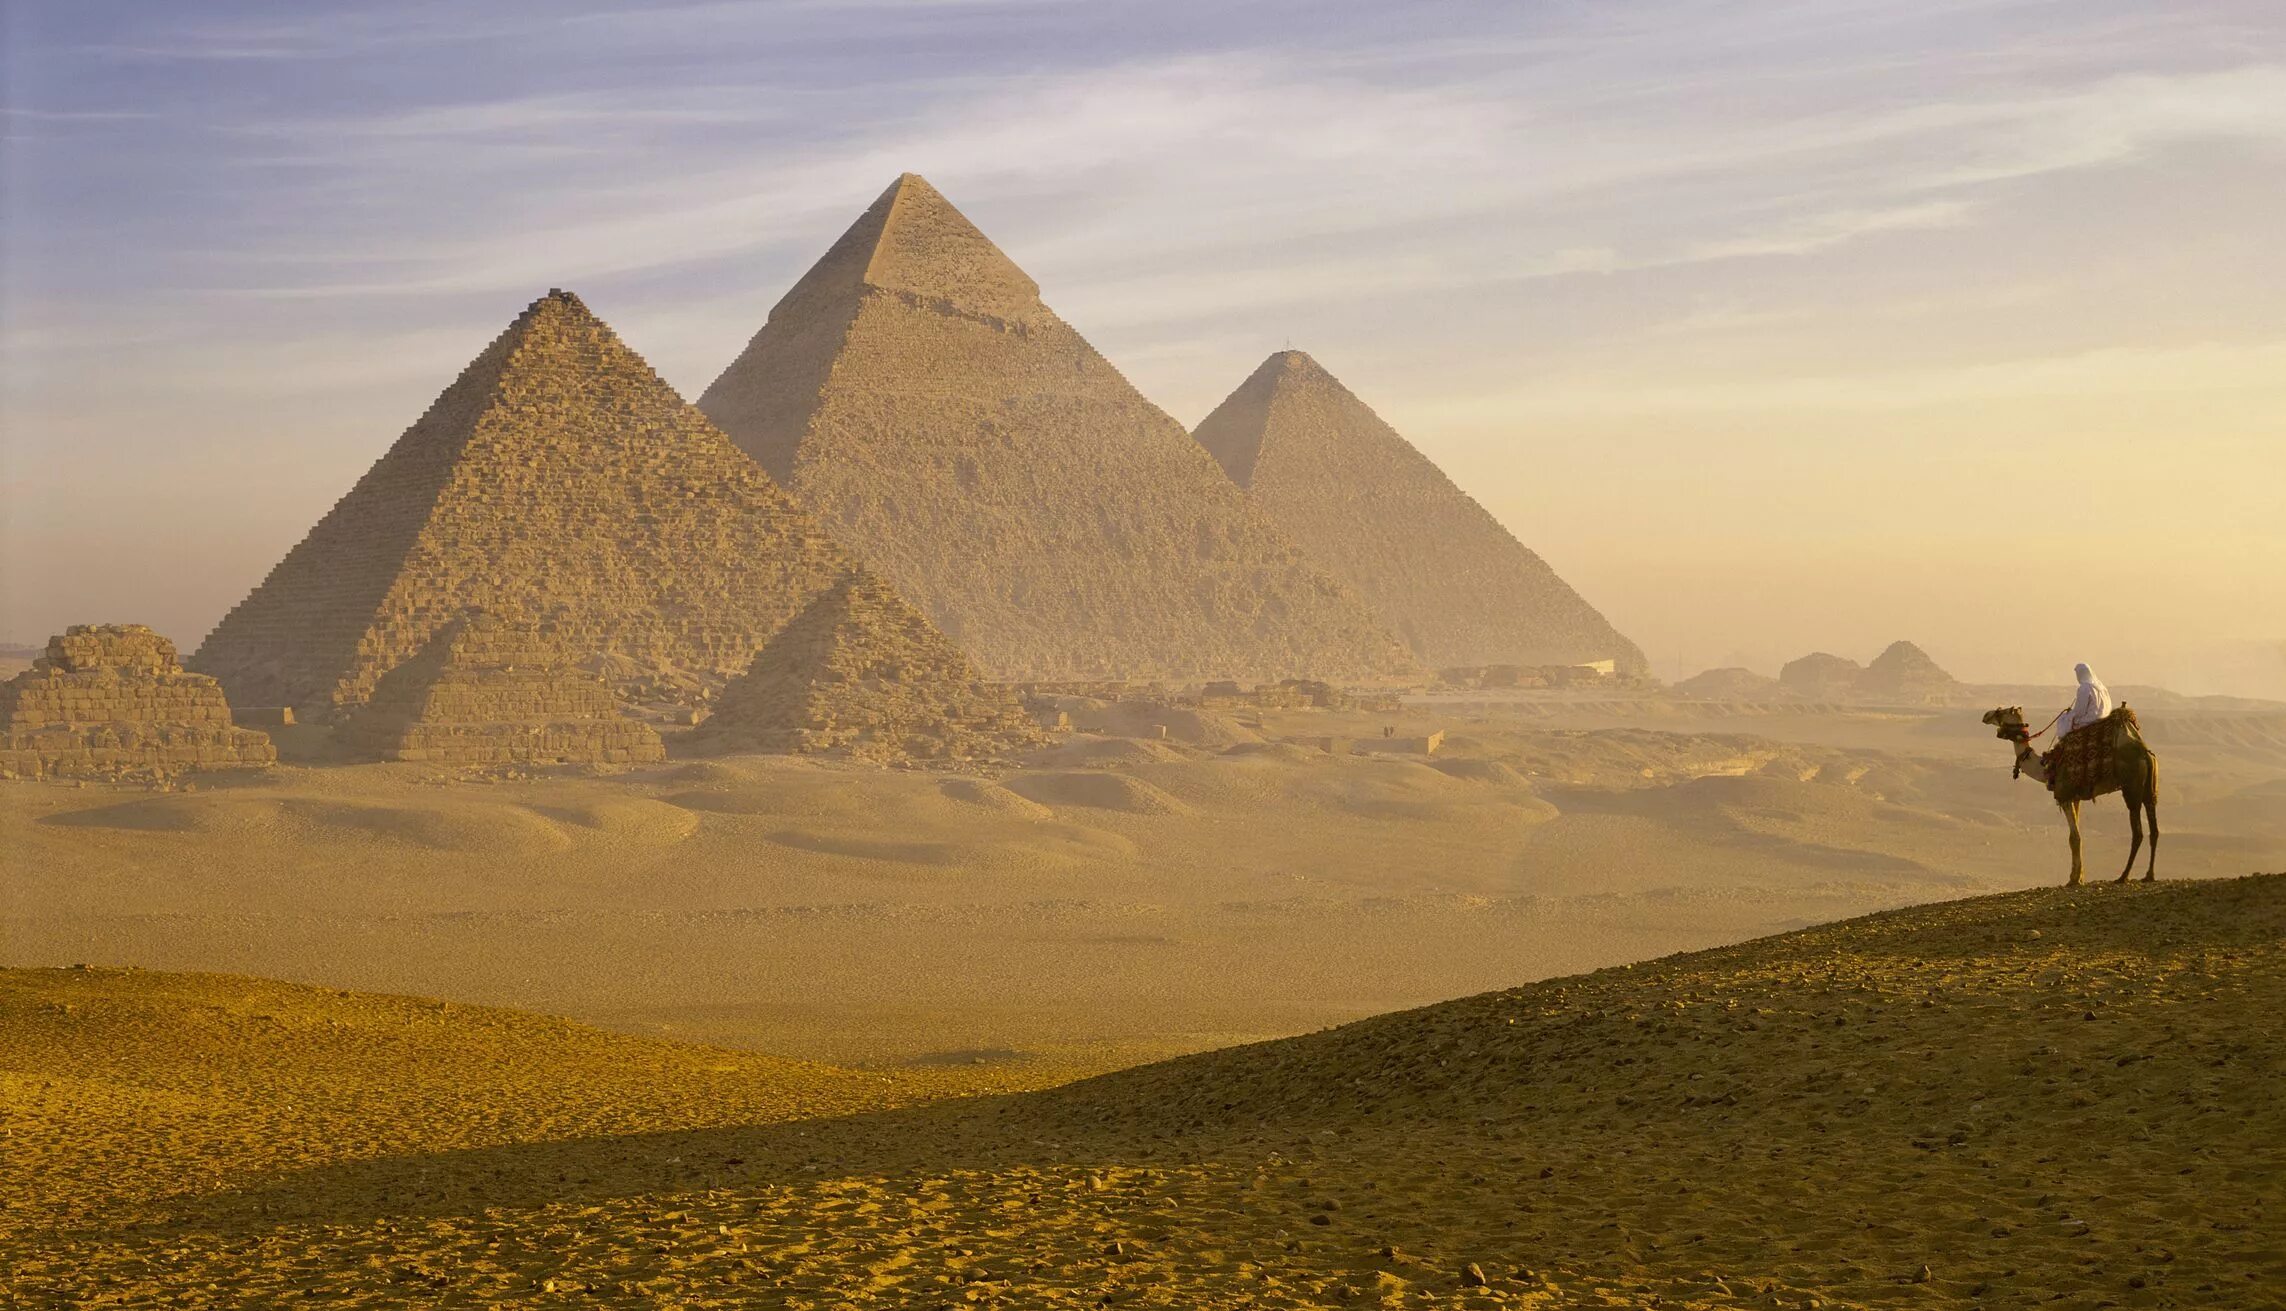 Ancient pyramids. Пирамиды Гизы древний Египет. Долина Гизы Египет. Каир пирамиды. Достопримечательности Египта пирамиды Гиза.